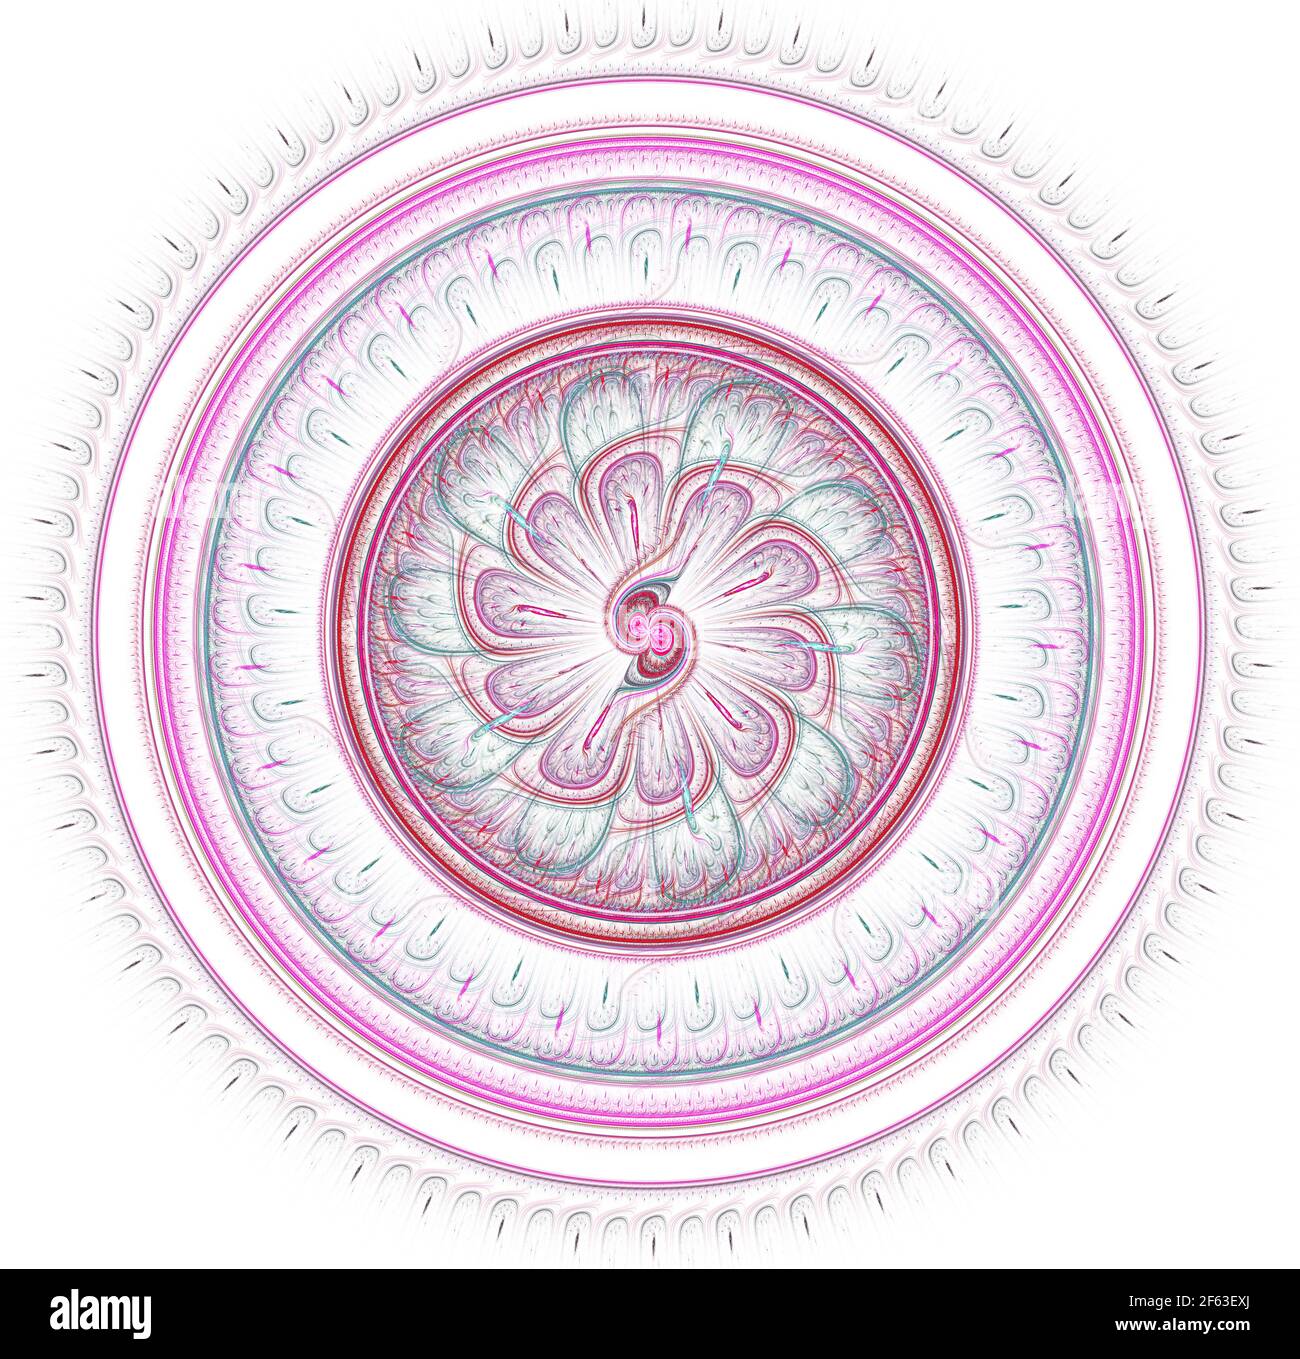 Fraktales Mandala auf dem Hintergrund. Verrückte abstrakte fraktale Formen mit kaleidoskopischen Muster Stockfoto